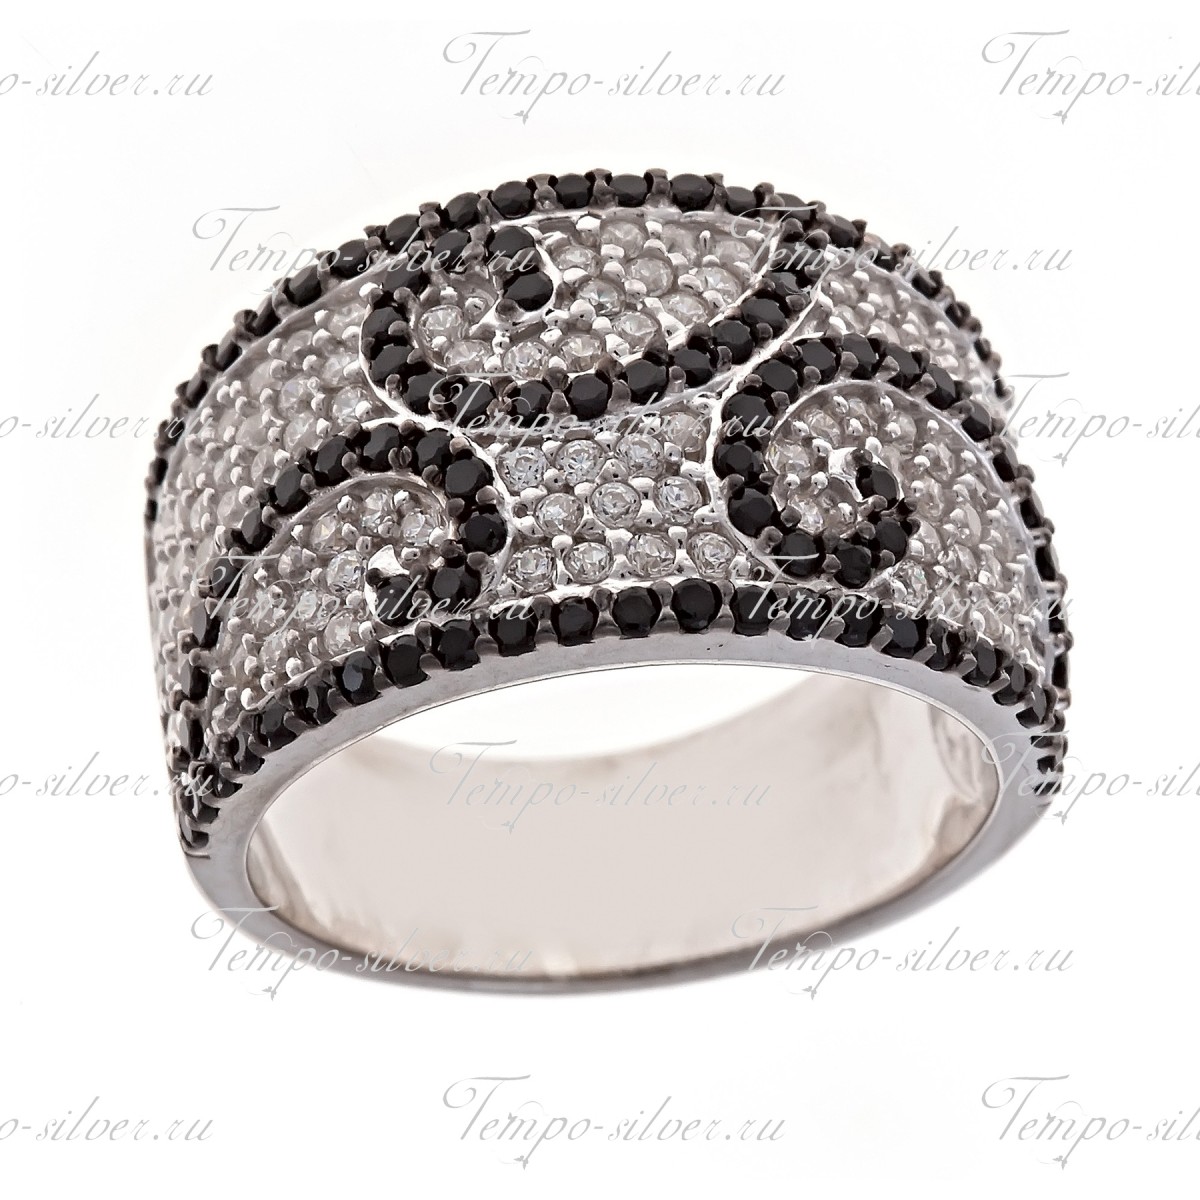 Кольцо из серебра широкой формы с узором из черно-белых камней